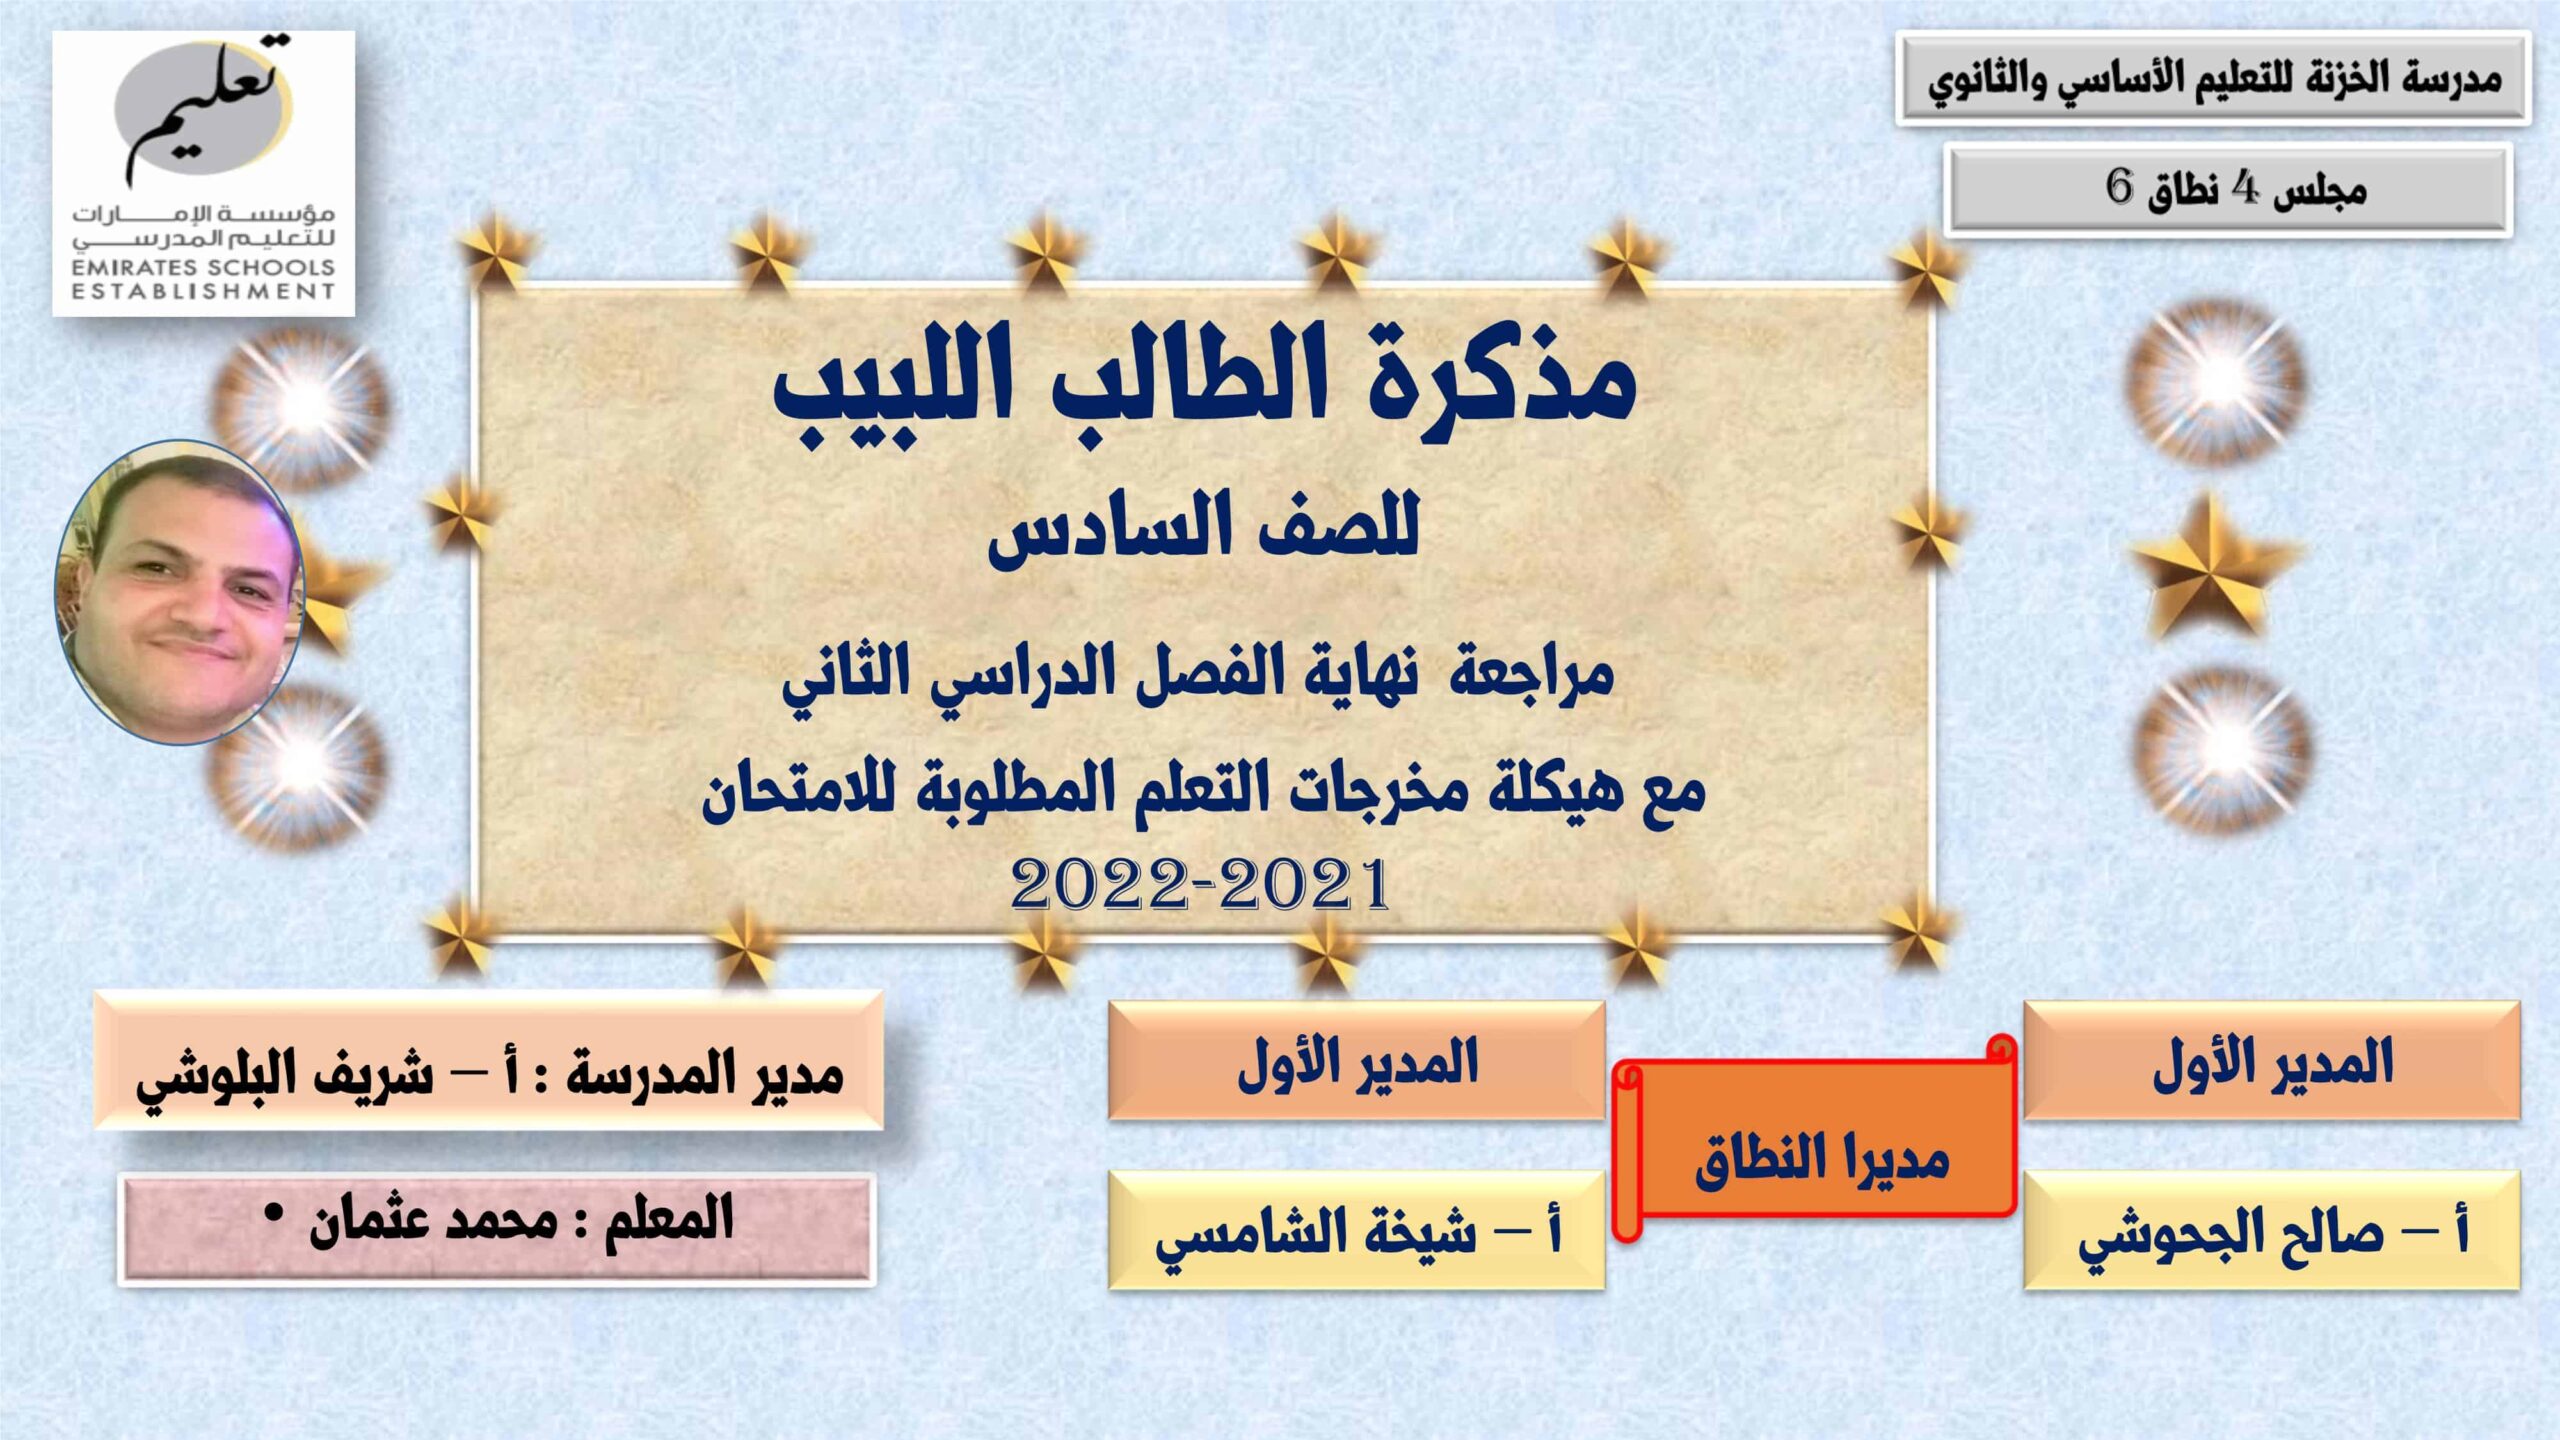 مراجعة هيكلة مخرجات التعلم للامتحان اللغة العربية الصف السادس